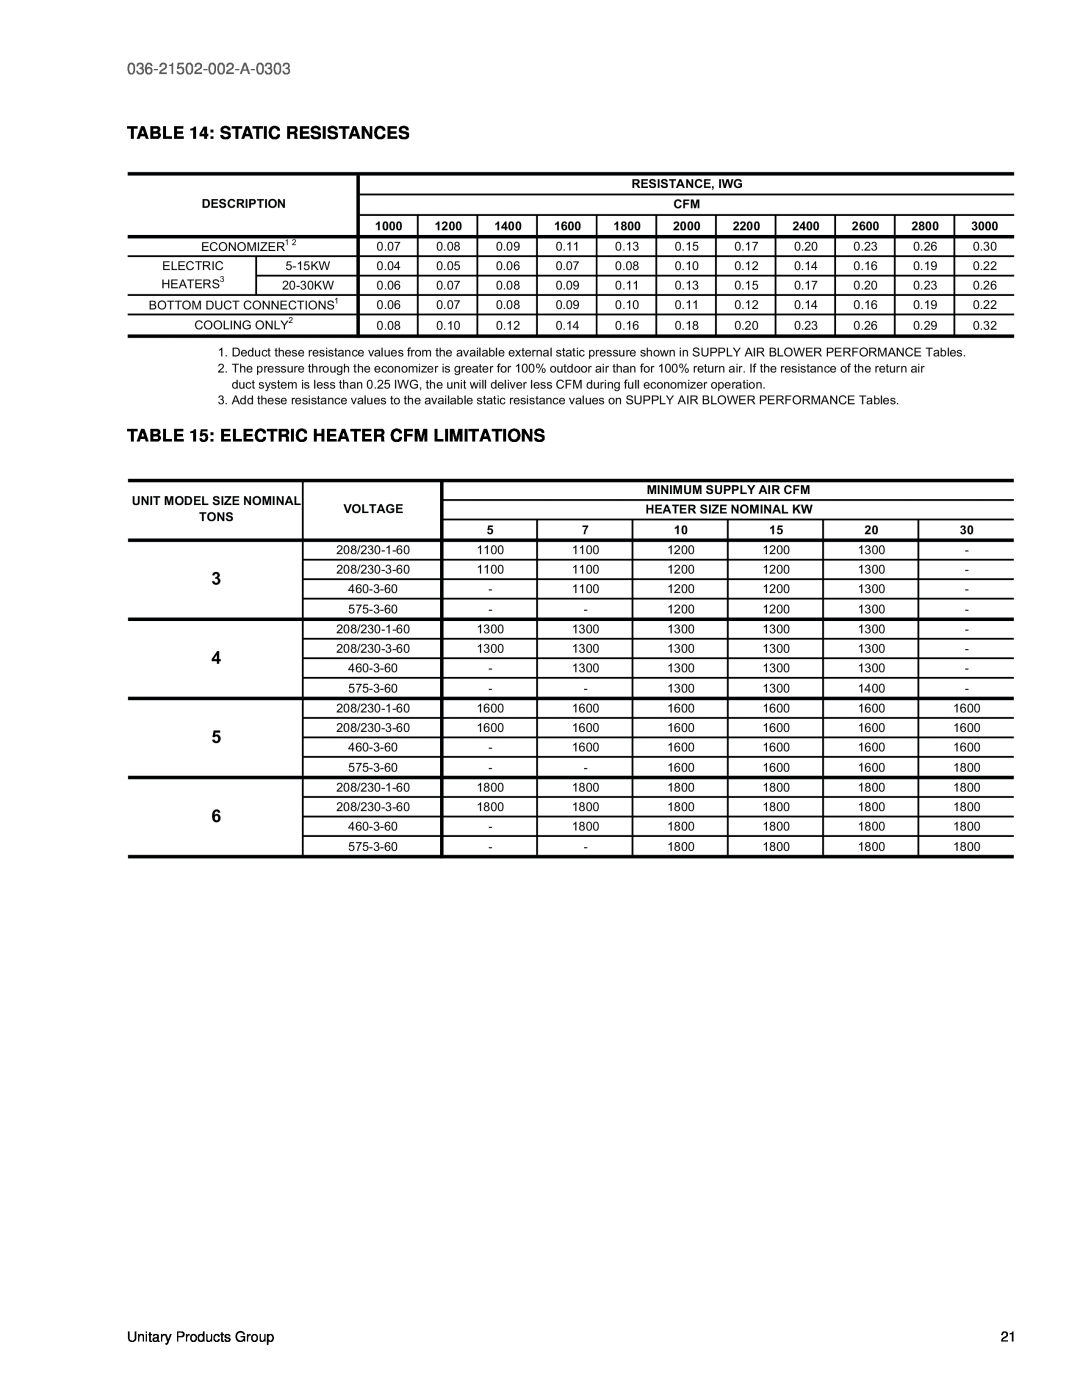 York DM 060 Static Resistances, Electric Heater Cfm Limitations, 036-21502-002-A-0303, ECONOMIZER1, 0.07, 0.08, 0.09, 0.11 